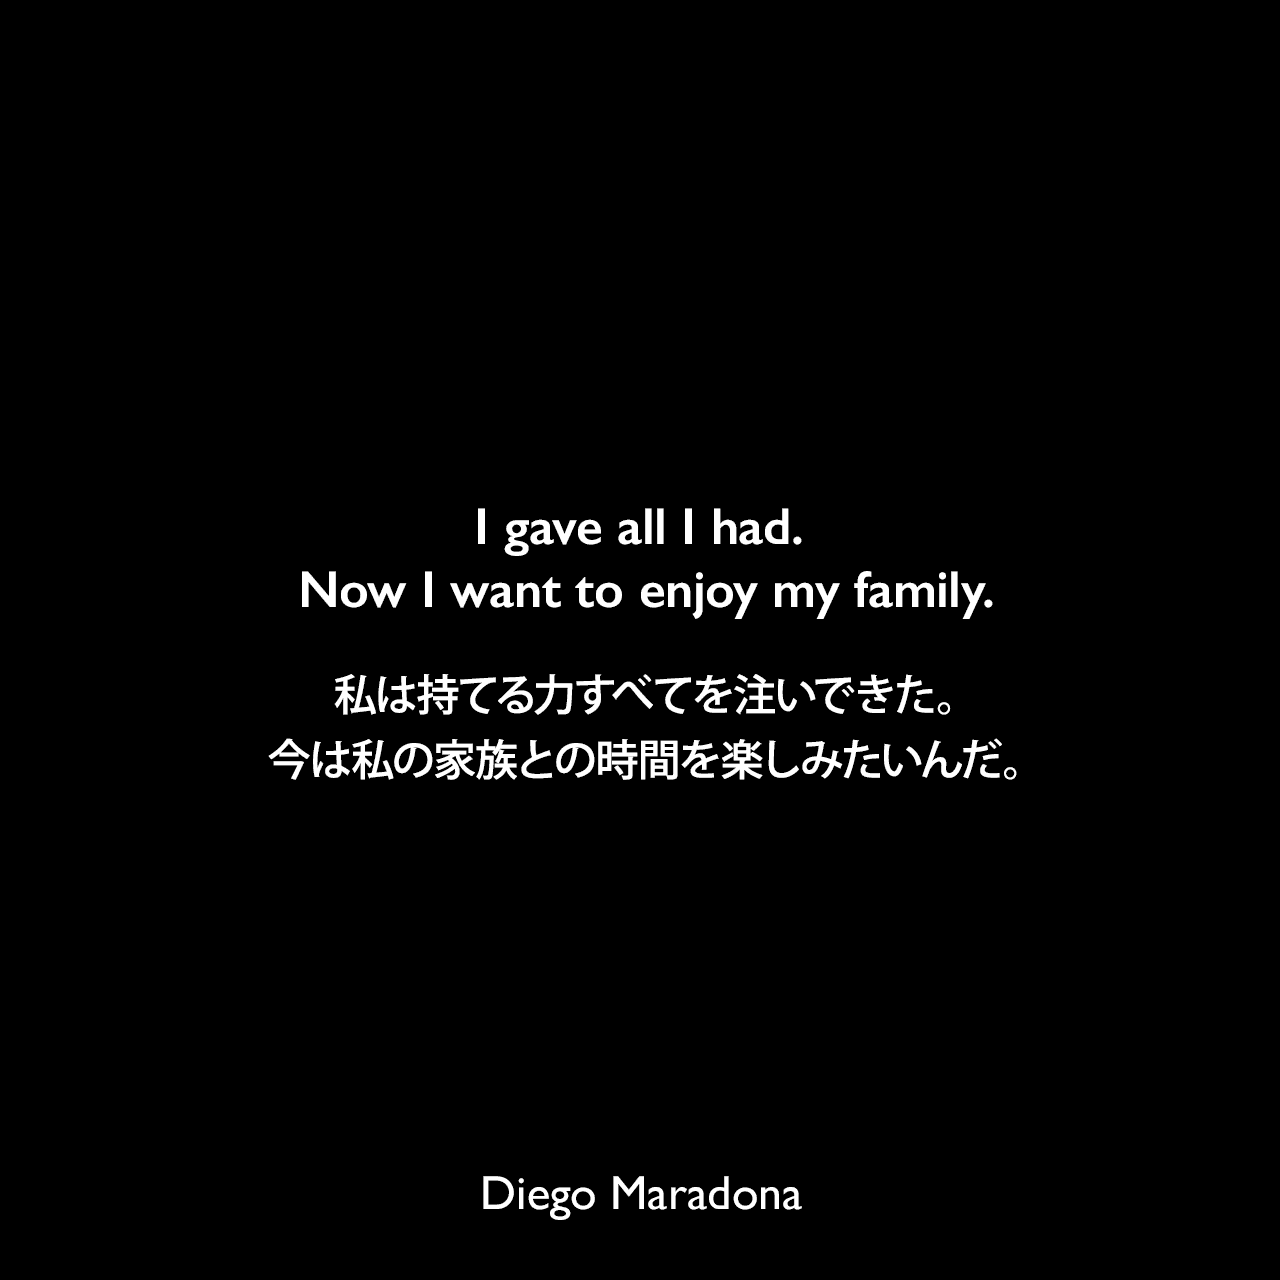 I gave all I had. Now I want to enjoy my family.私は持てる力すべてを注いできた。今は私の家族との時間を楽しみたいんだ。Diego Maradona